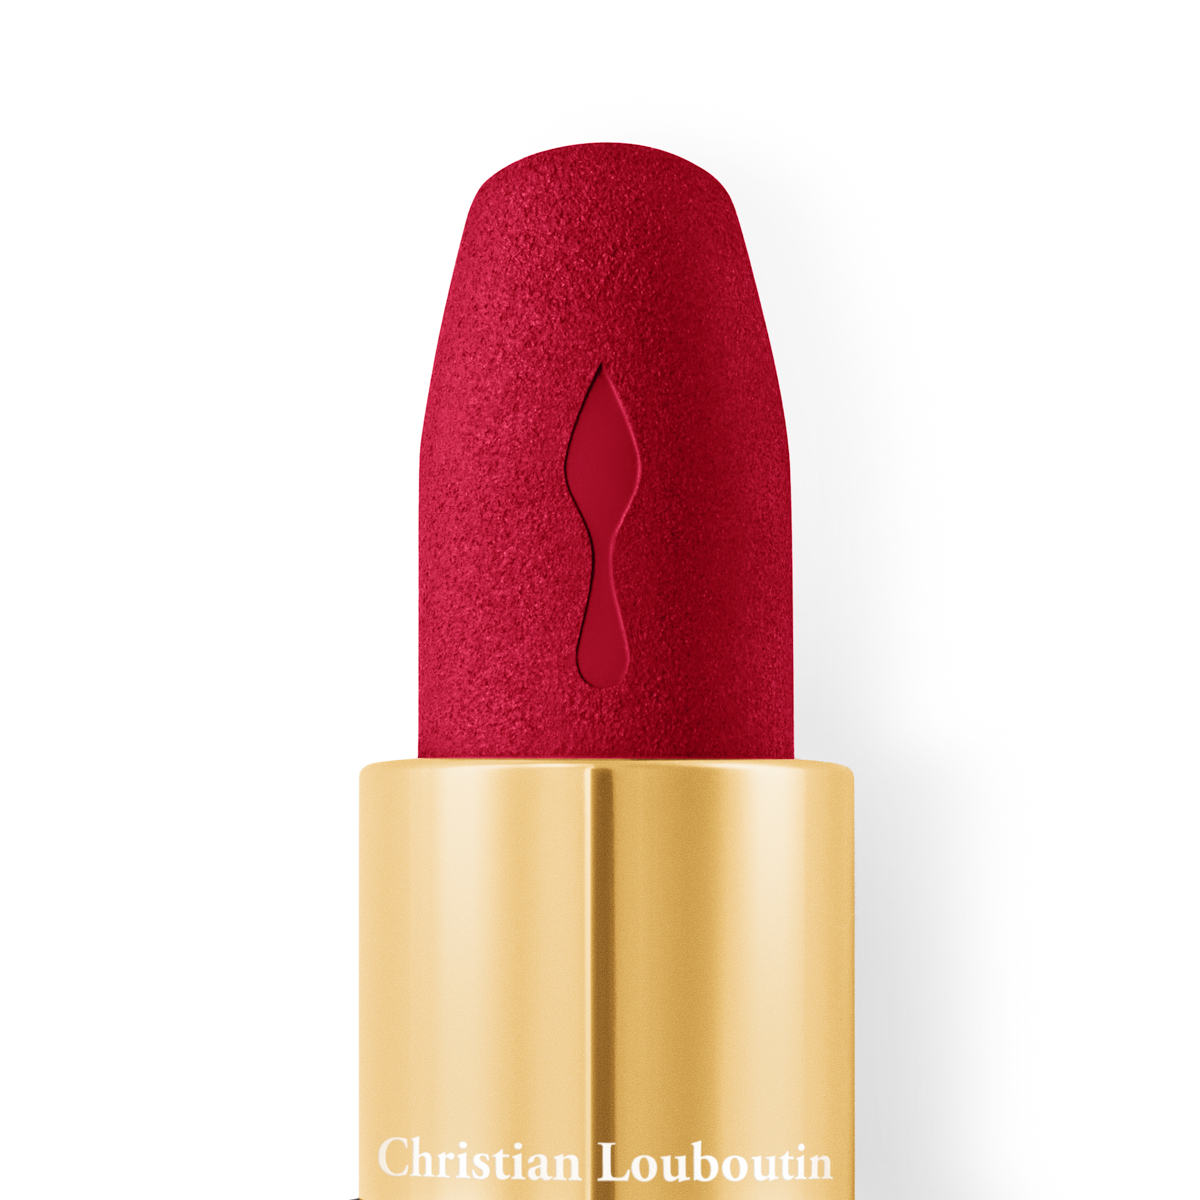 Christian Louboutin Beauty Velvet Matte Lip Colour - Just Nothing